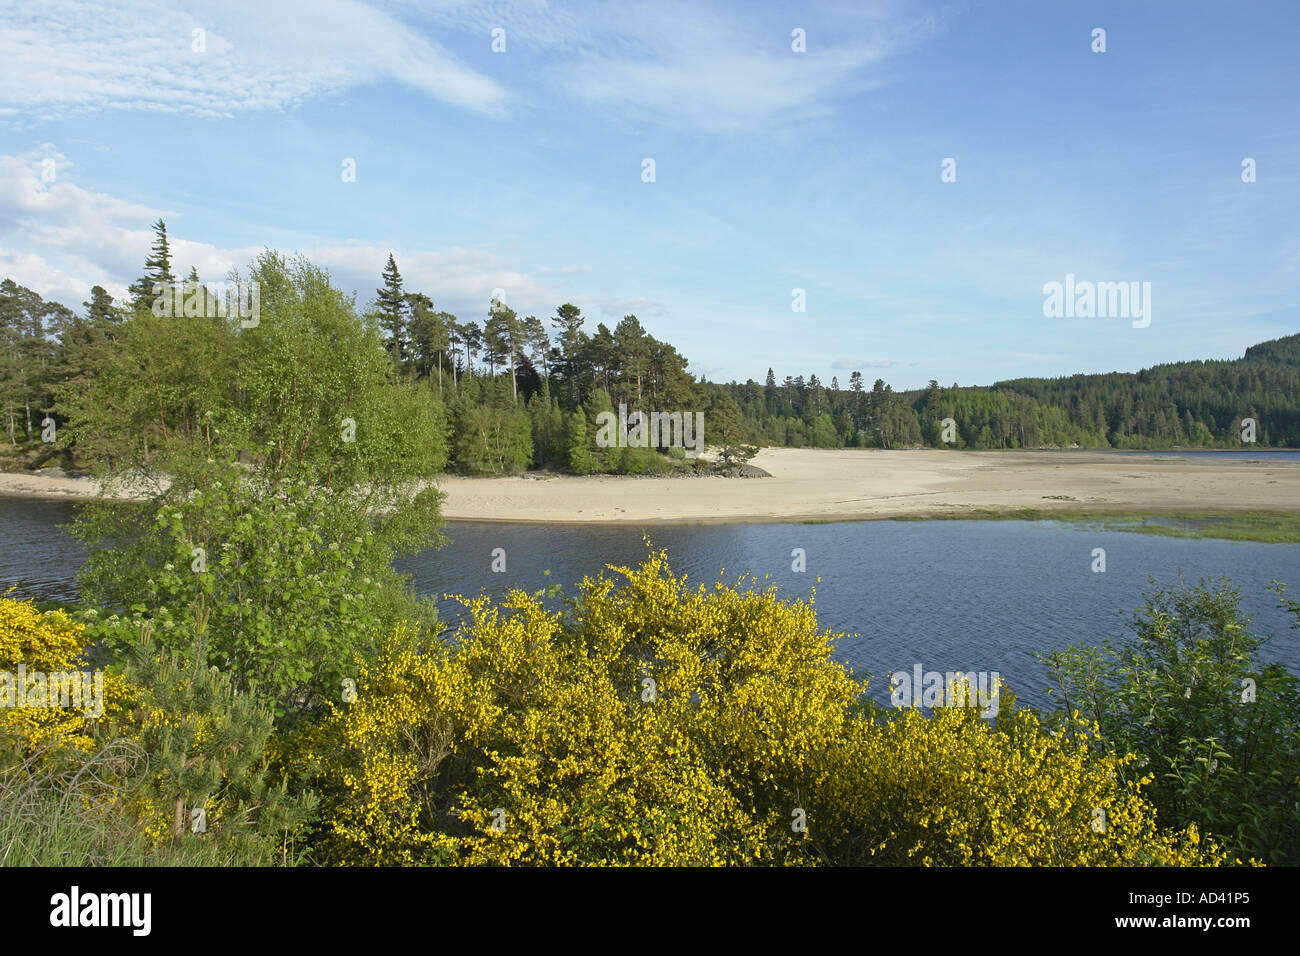 La célèbre plage de sable blanc à l'extrémité supérieure du Loch Laggan dans les Highlands écossais Banque D'Images